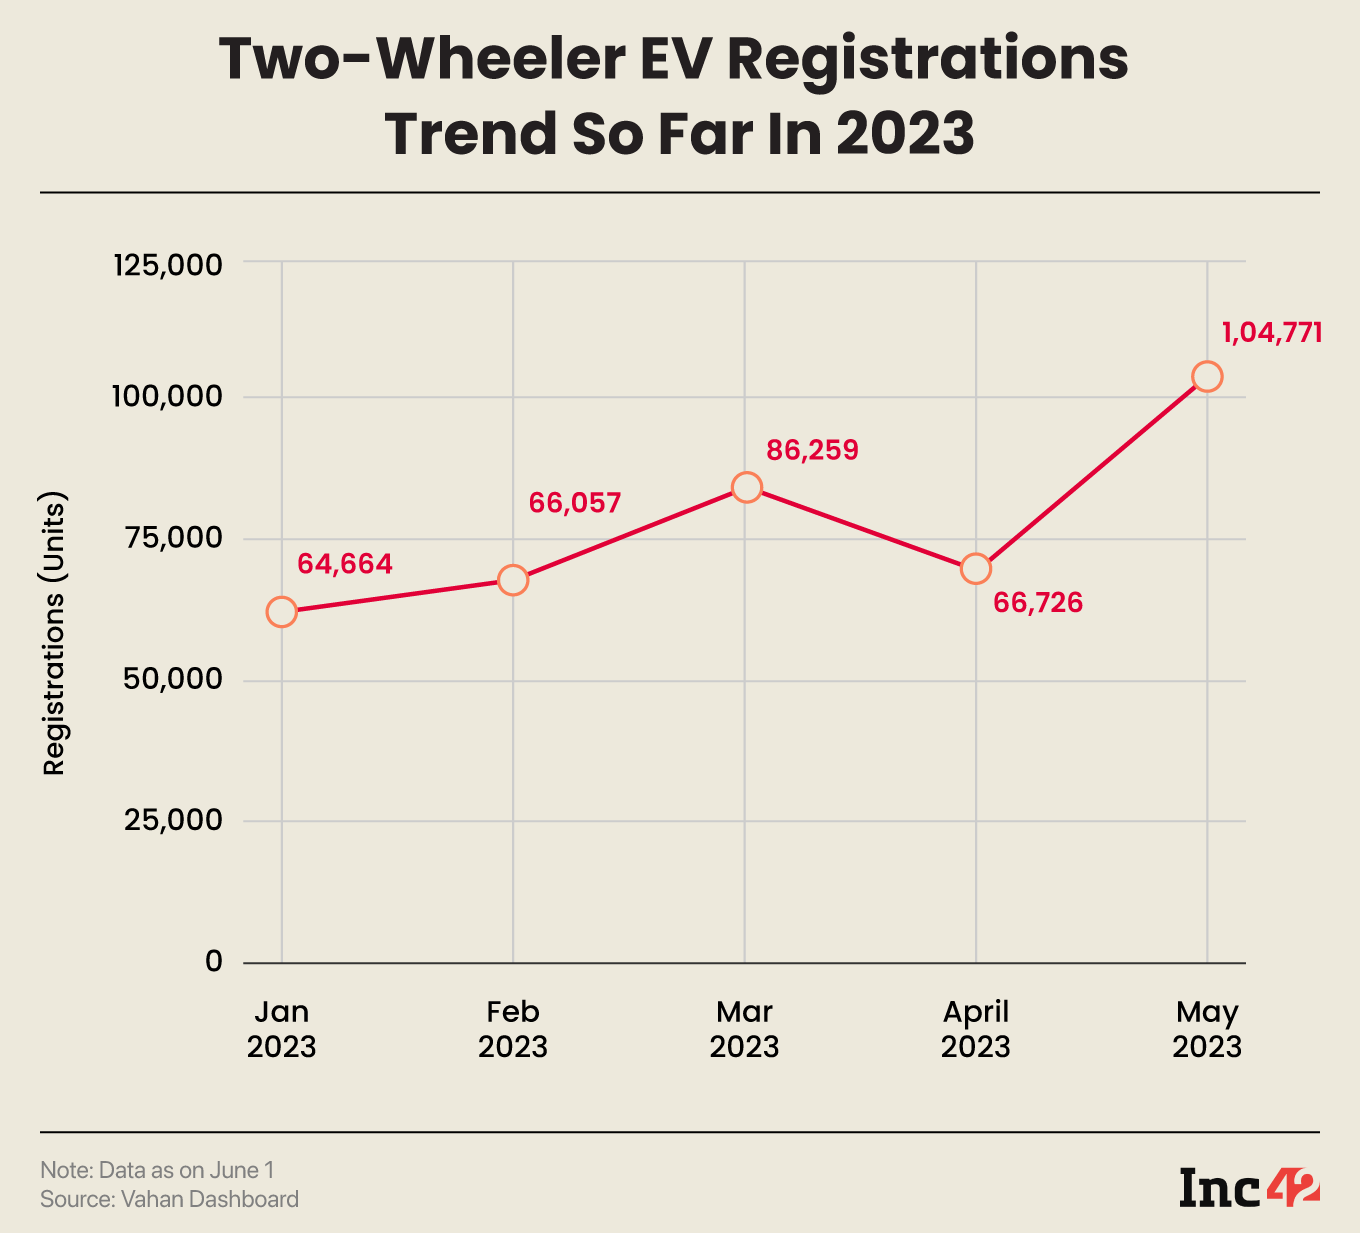 Two-Wheeler EV Registrations Trend So Far In 2023 